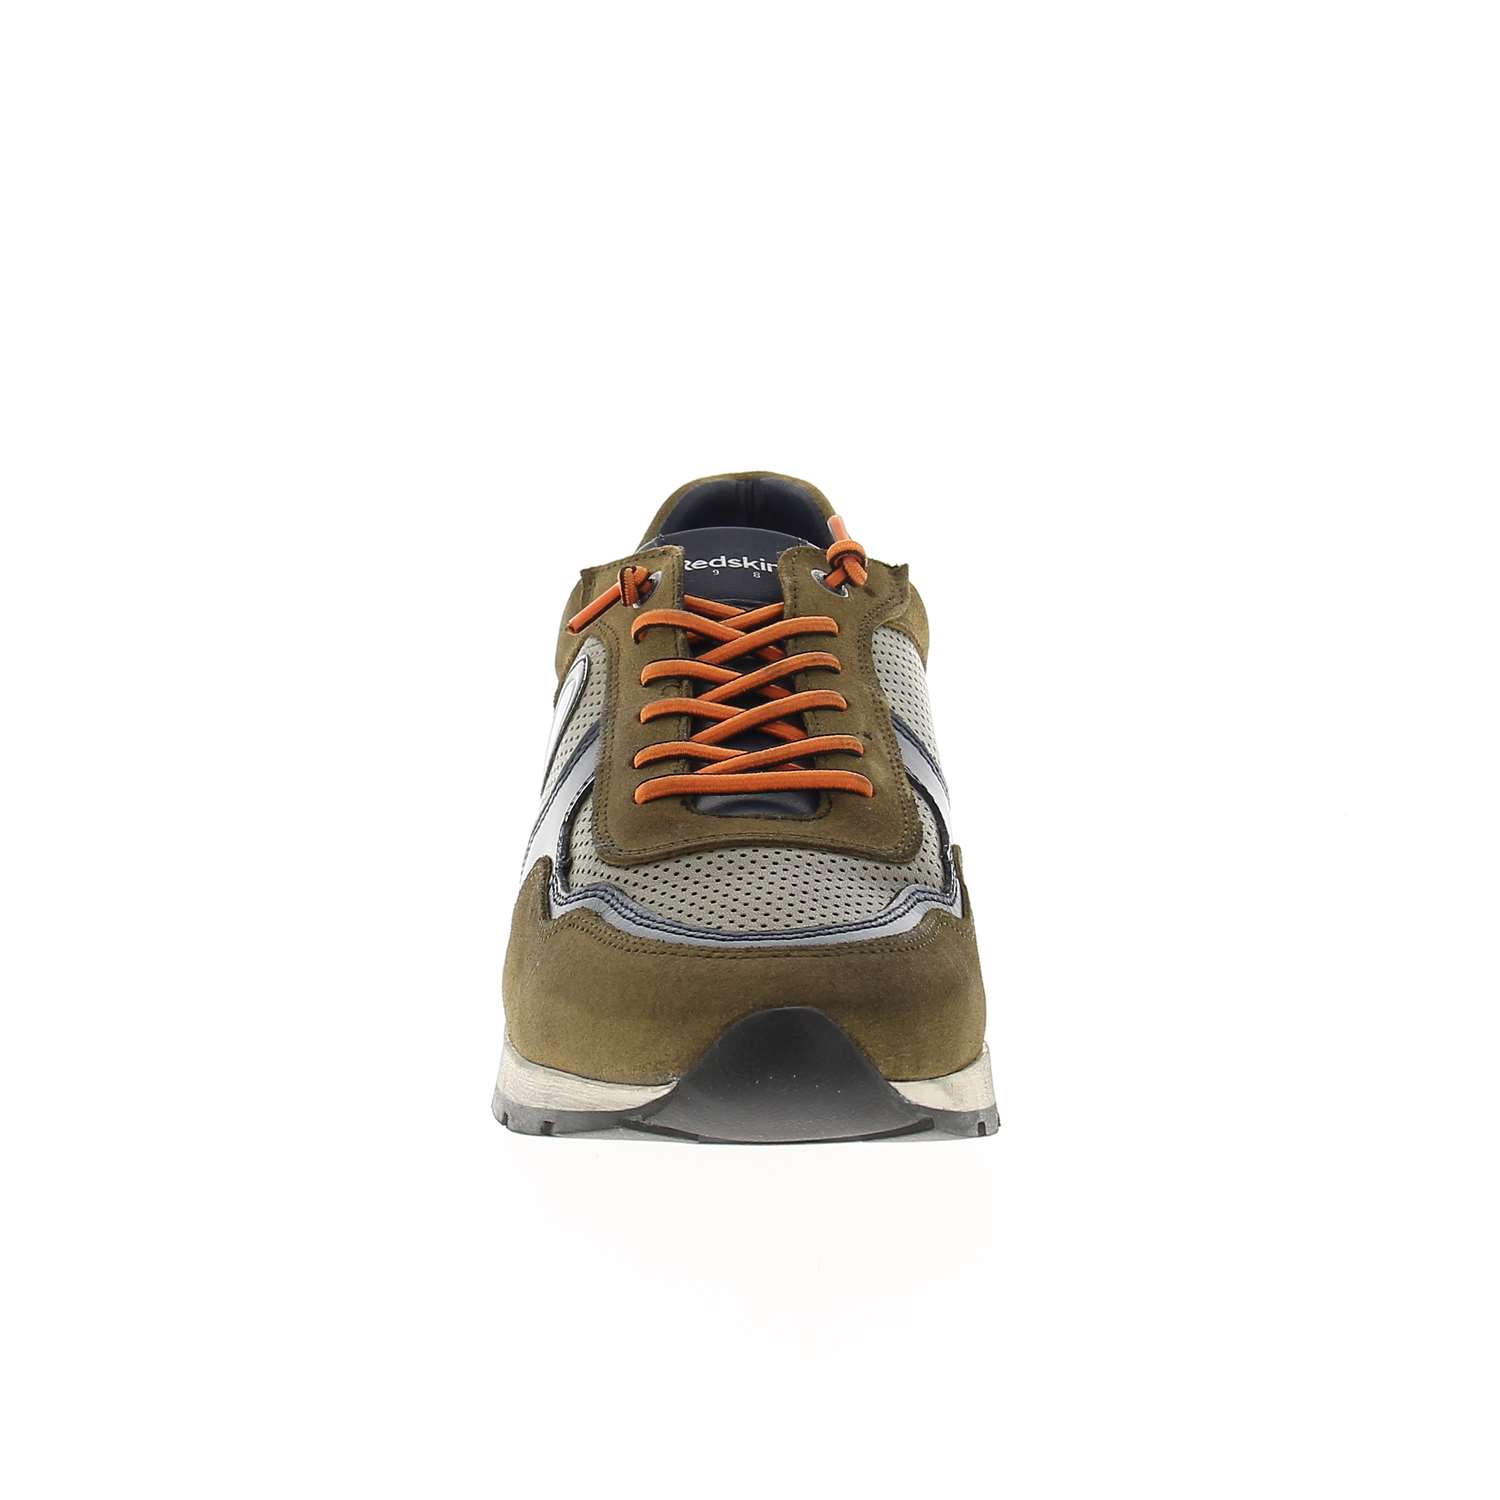 03 - STITCH - CLEON - Chaussures à lacets - Croûte de cuir